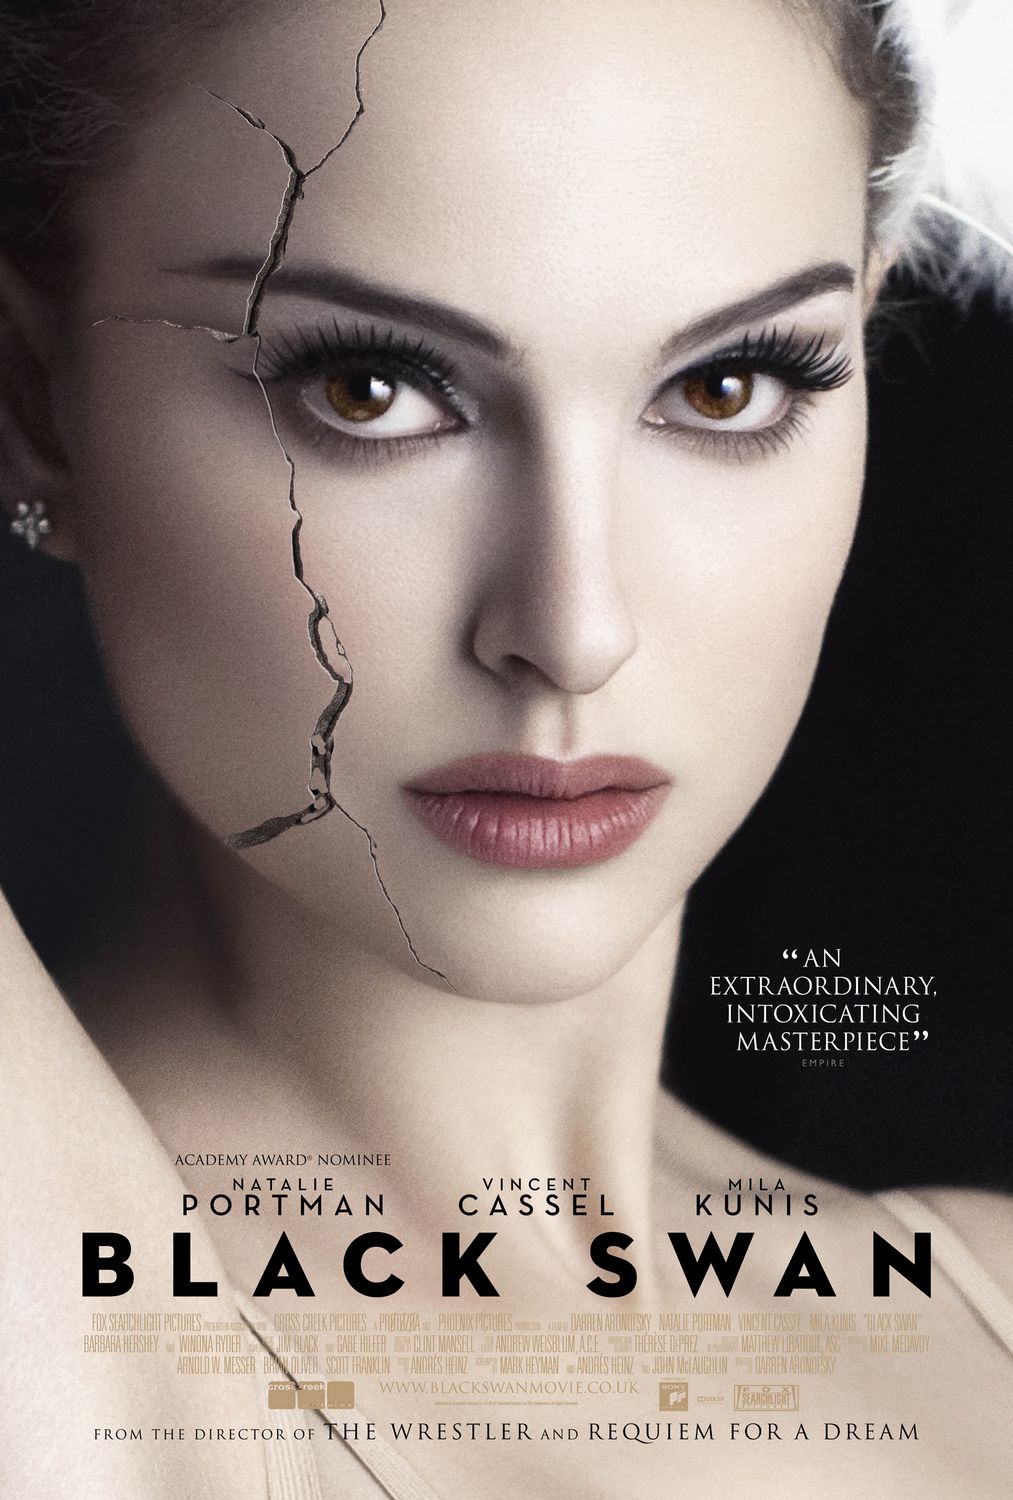 Black Swan – Darren Aronofsky